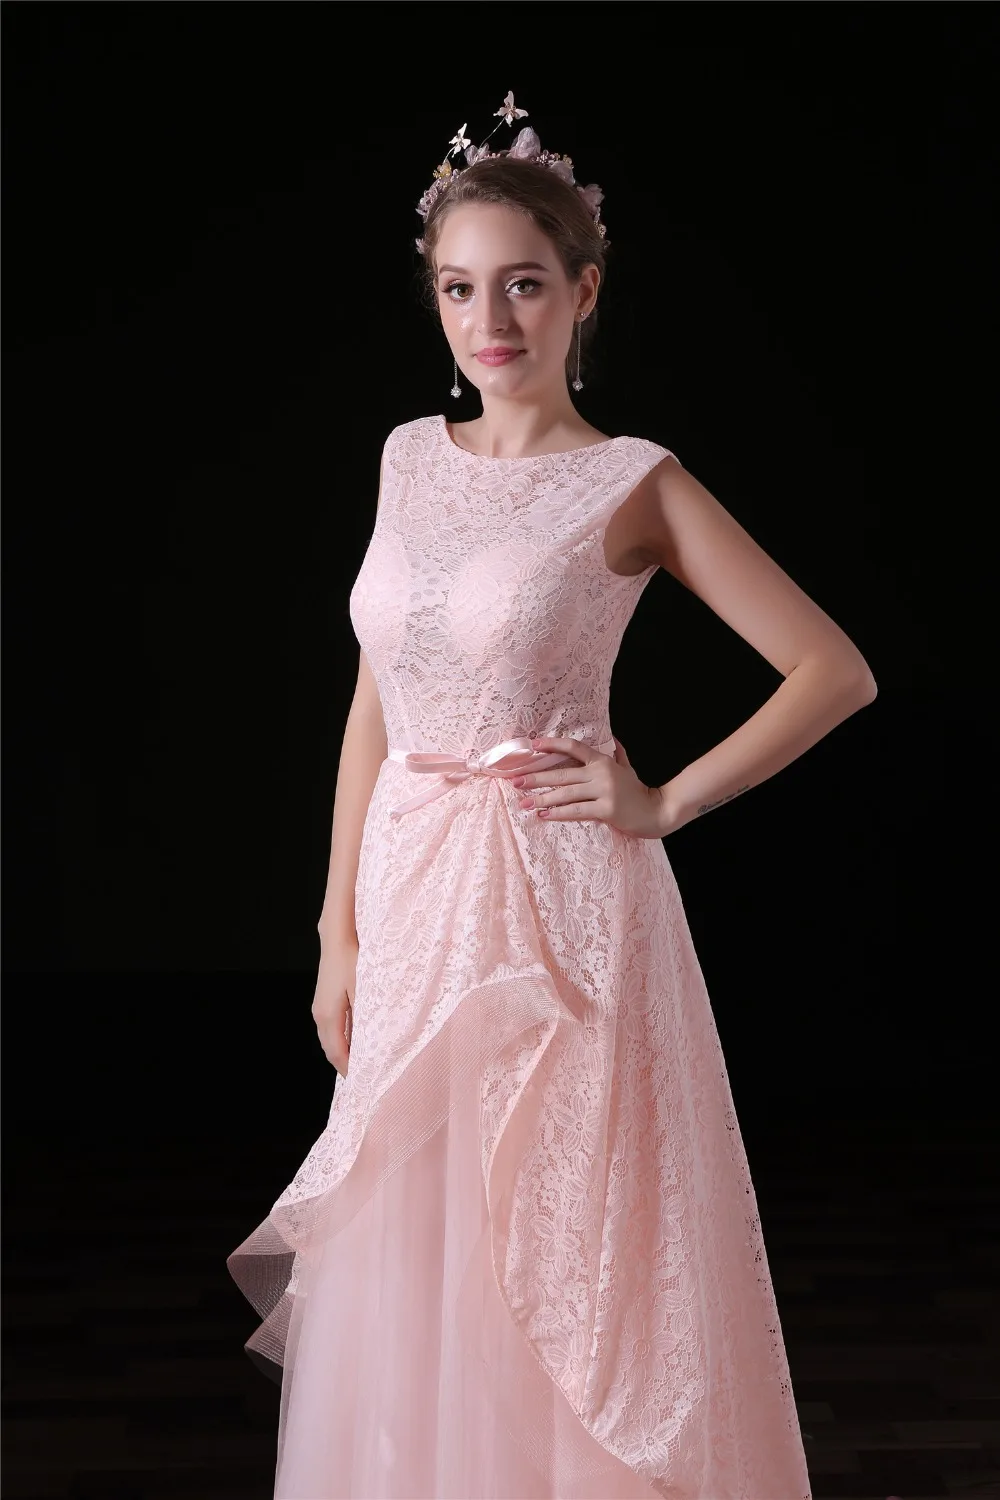 JaneVini Pembe Uzun Gelinlik Modelleri 2018 Dantel See Through Korse Düğün Parti Elbise Artı Boyutu Tül Kolsuz Balo Elbise Yeni 1